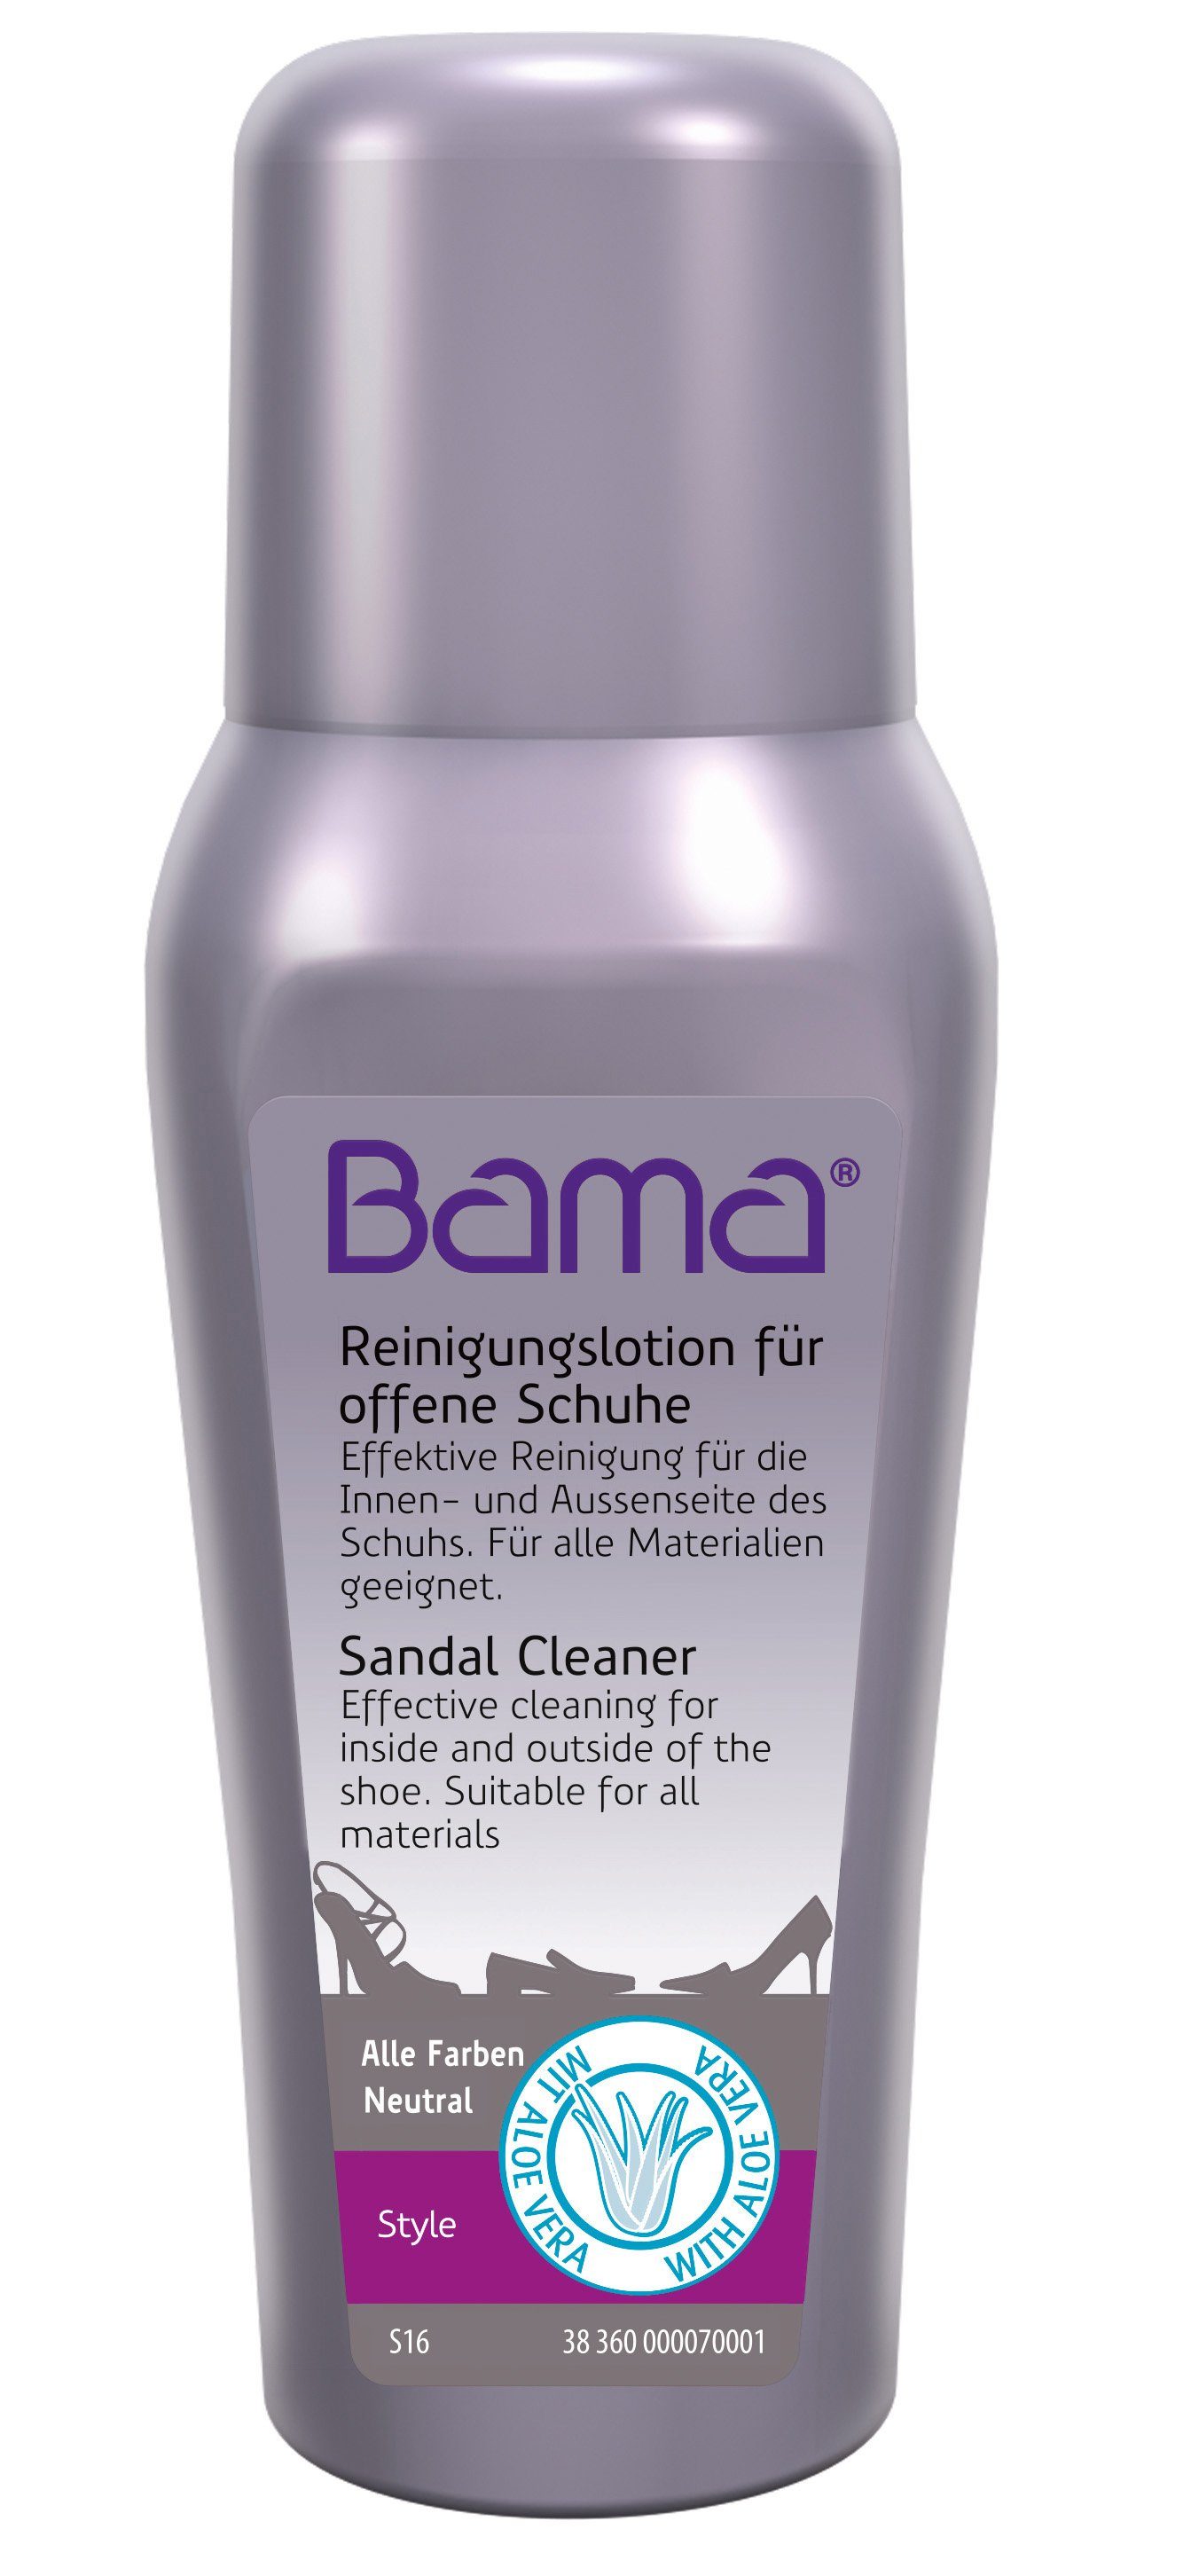 BAMA Group Schuhputzbürste Sandal Cleaner - Reinigungslotion für offene Schuhe mit Aloe Vera